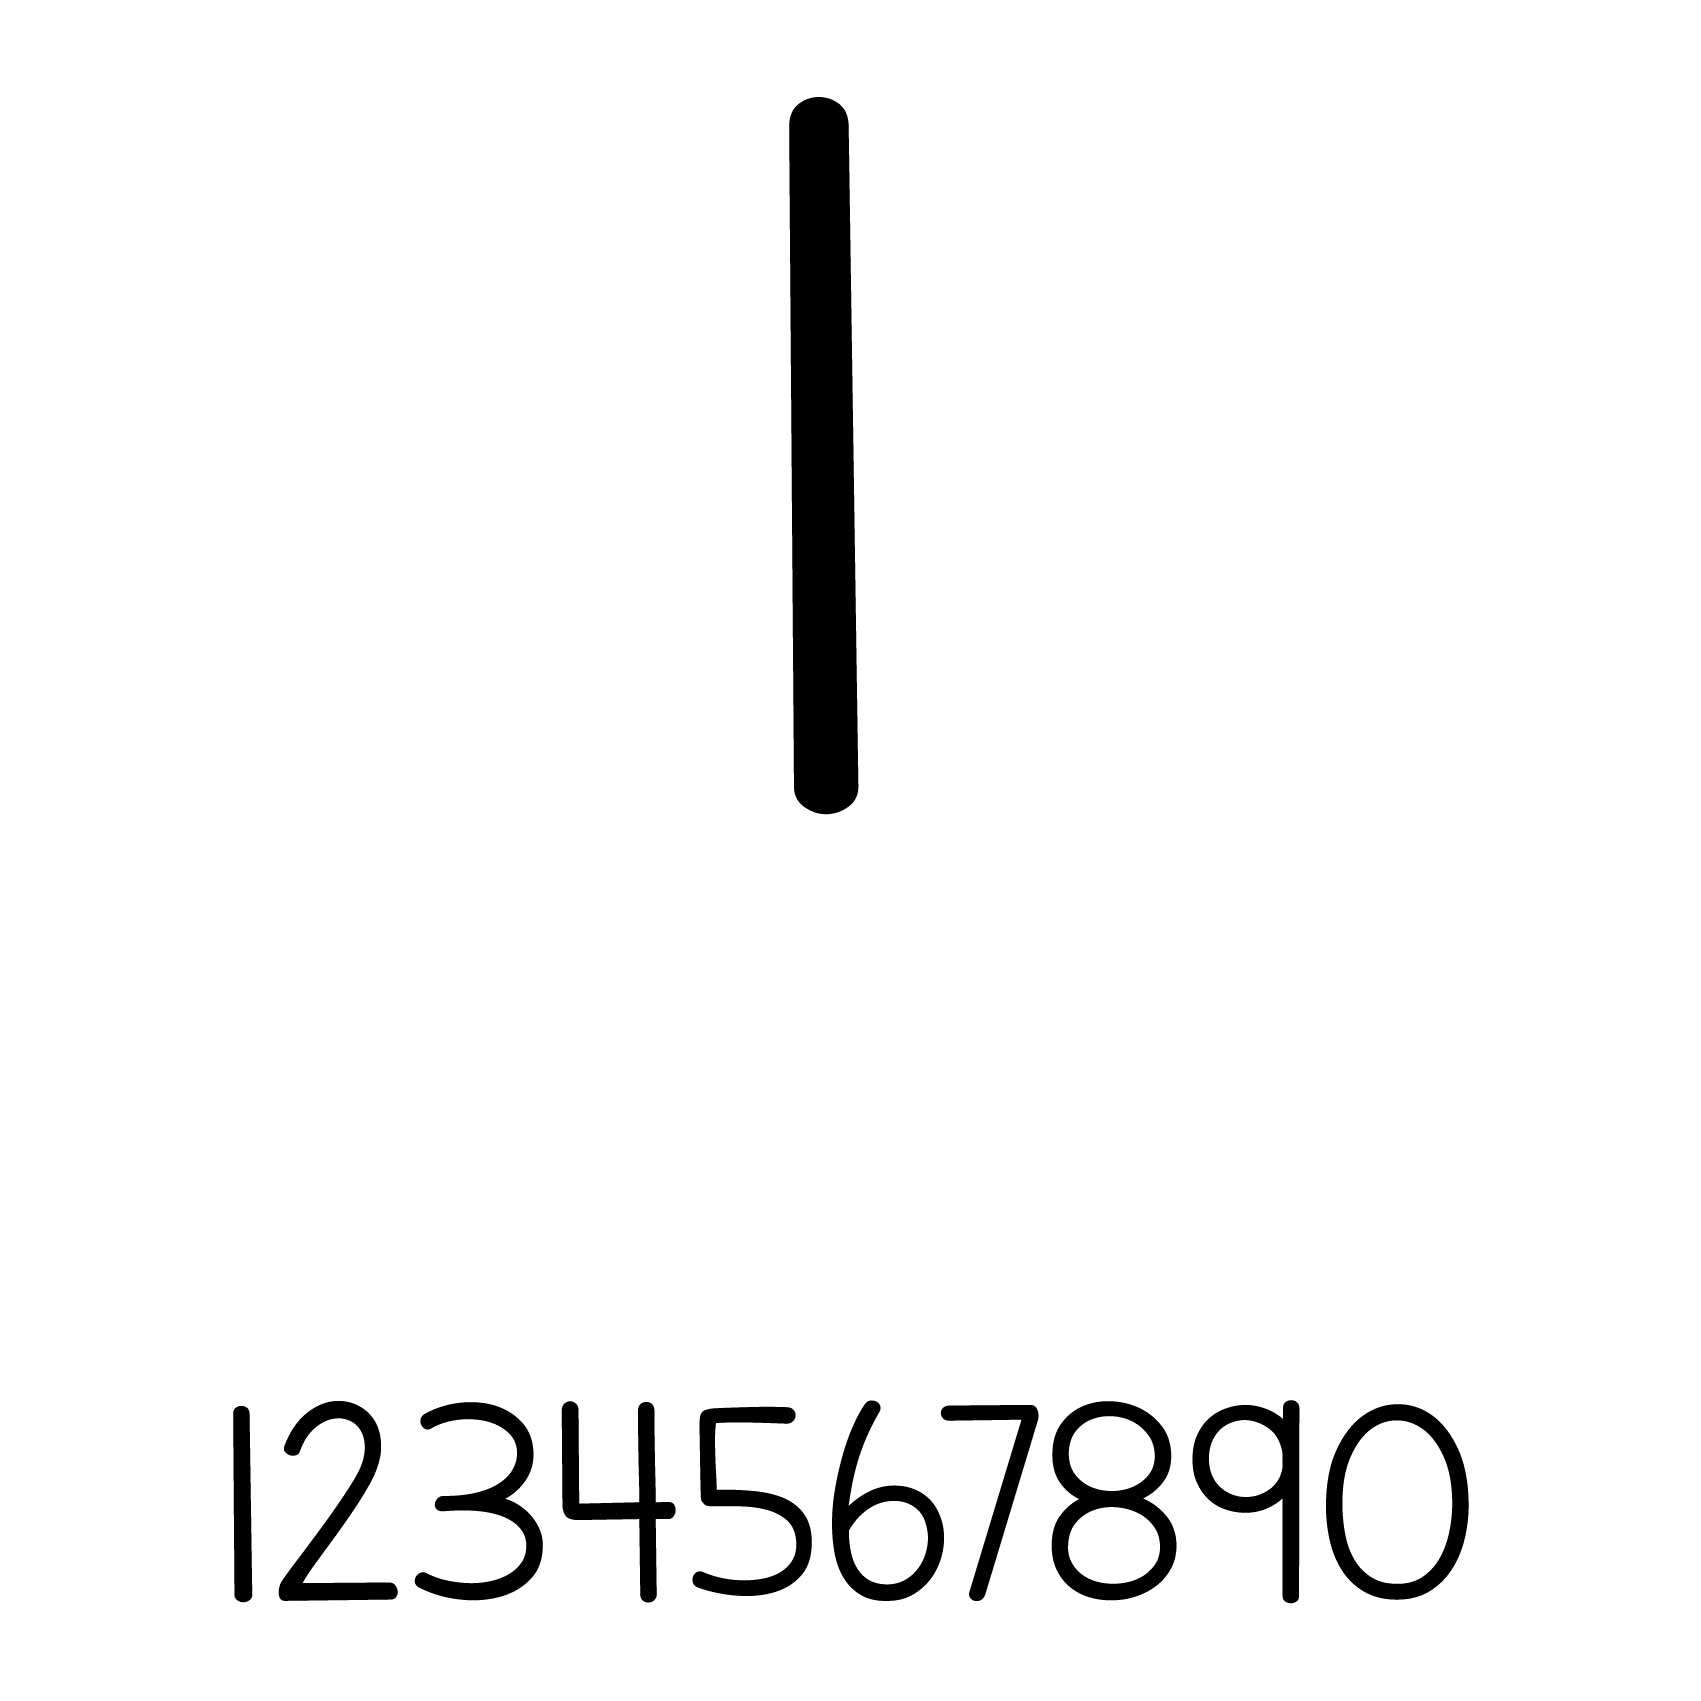 stickers-numéro-personnalisé-ref7numero-autocollant-numero-personnalise-sticker-chiffre-personnalisable-nombre-rallye-porte-1-2-3-4-5-6-7-8-9-0-lettrage